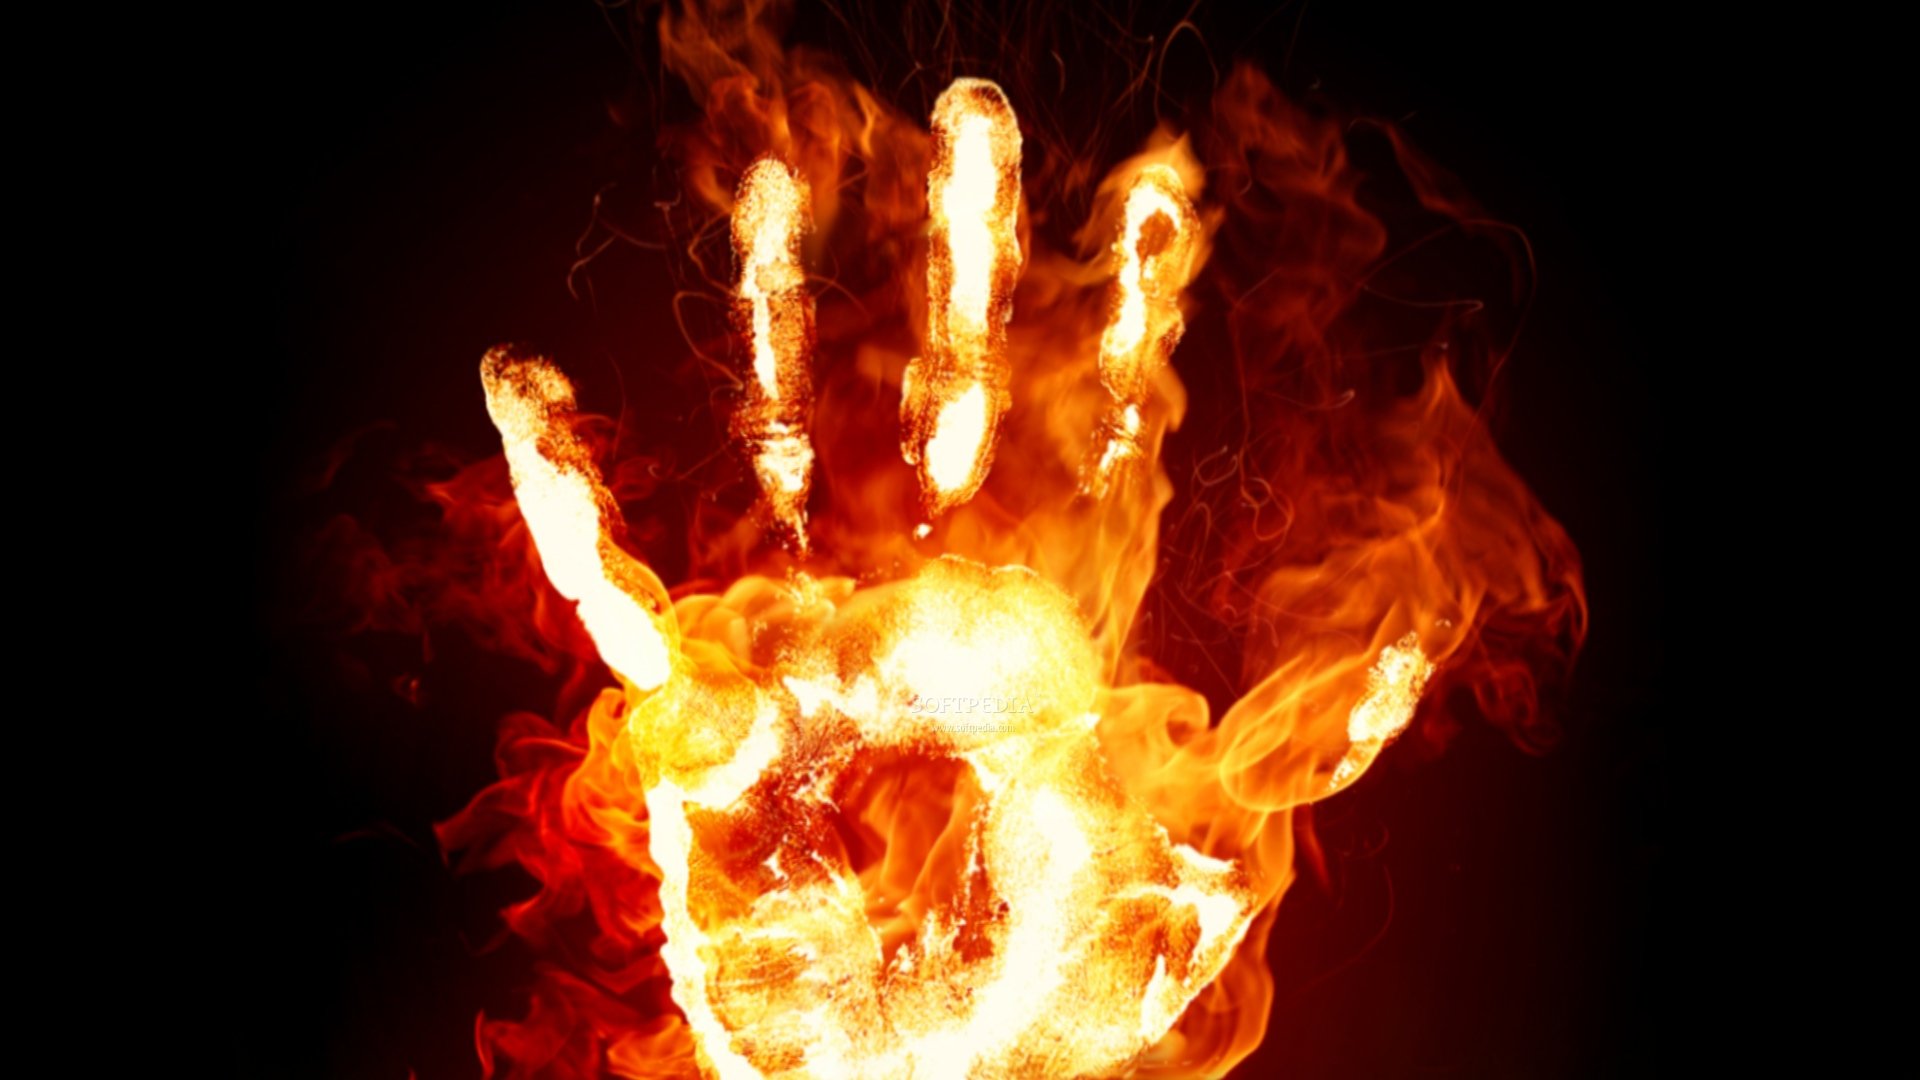 Fire-Hands-Screensaver_1.jpg